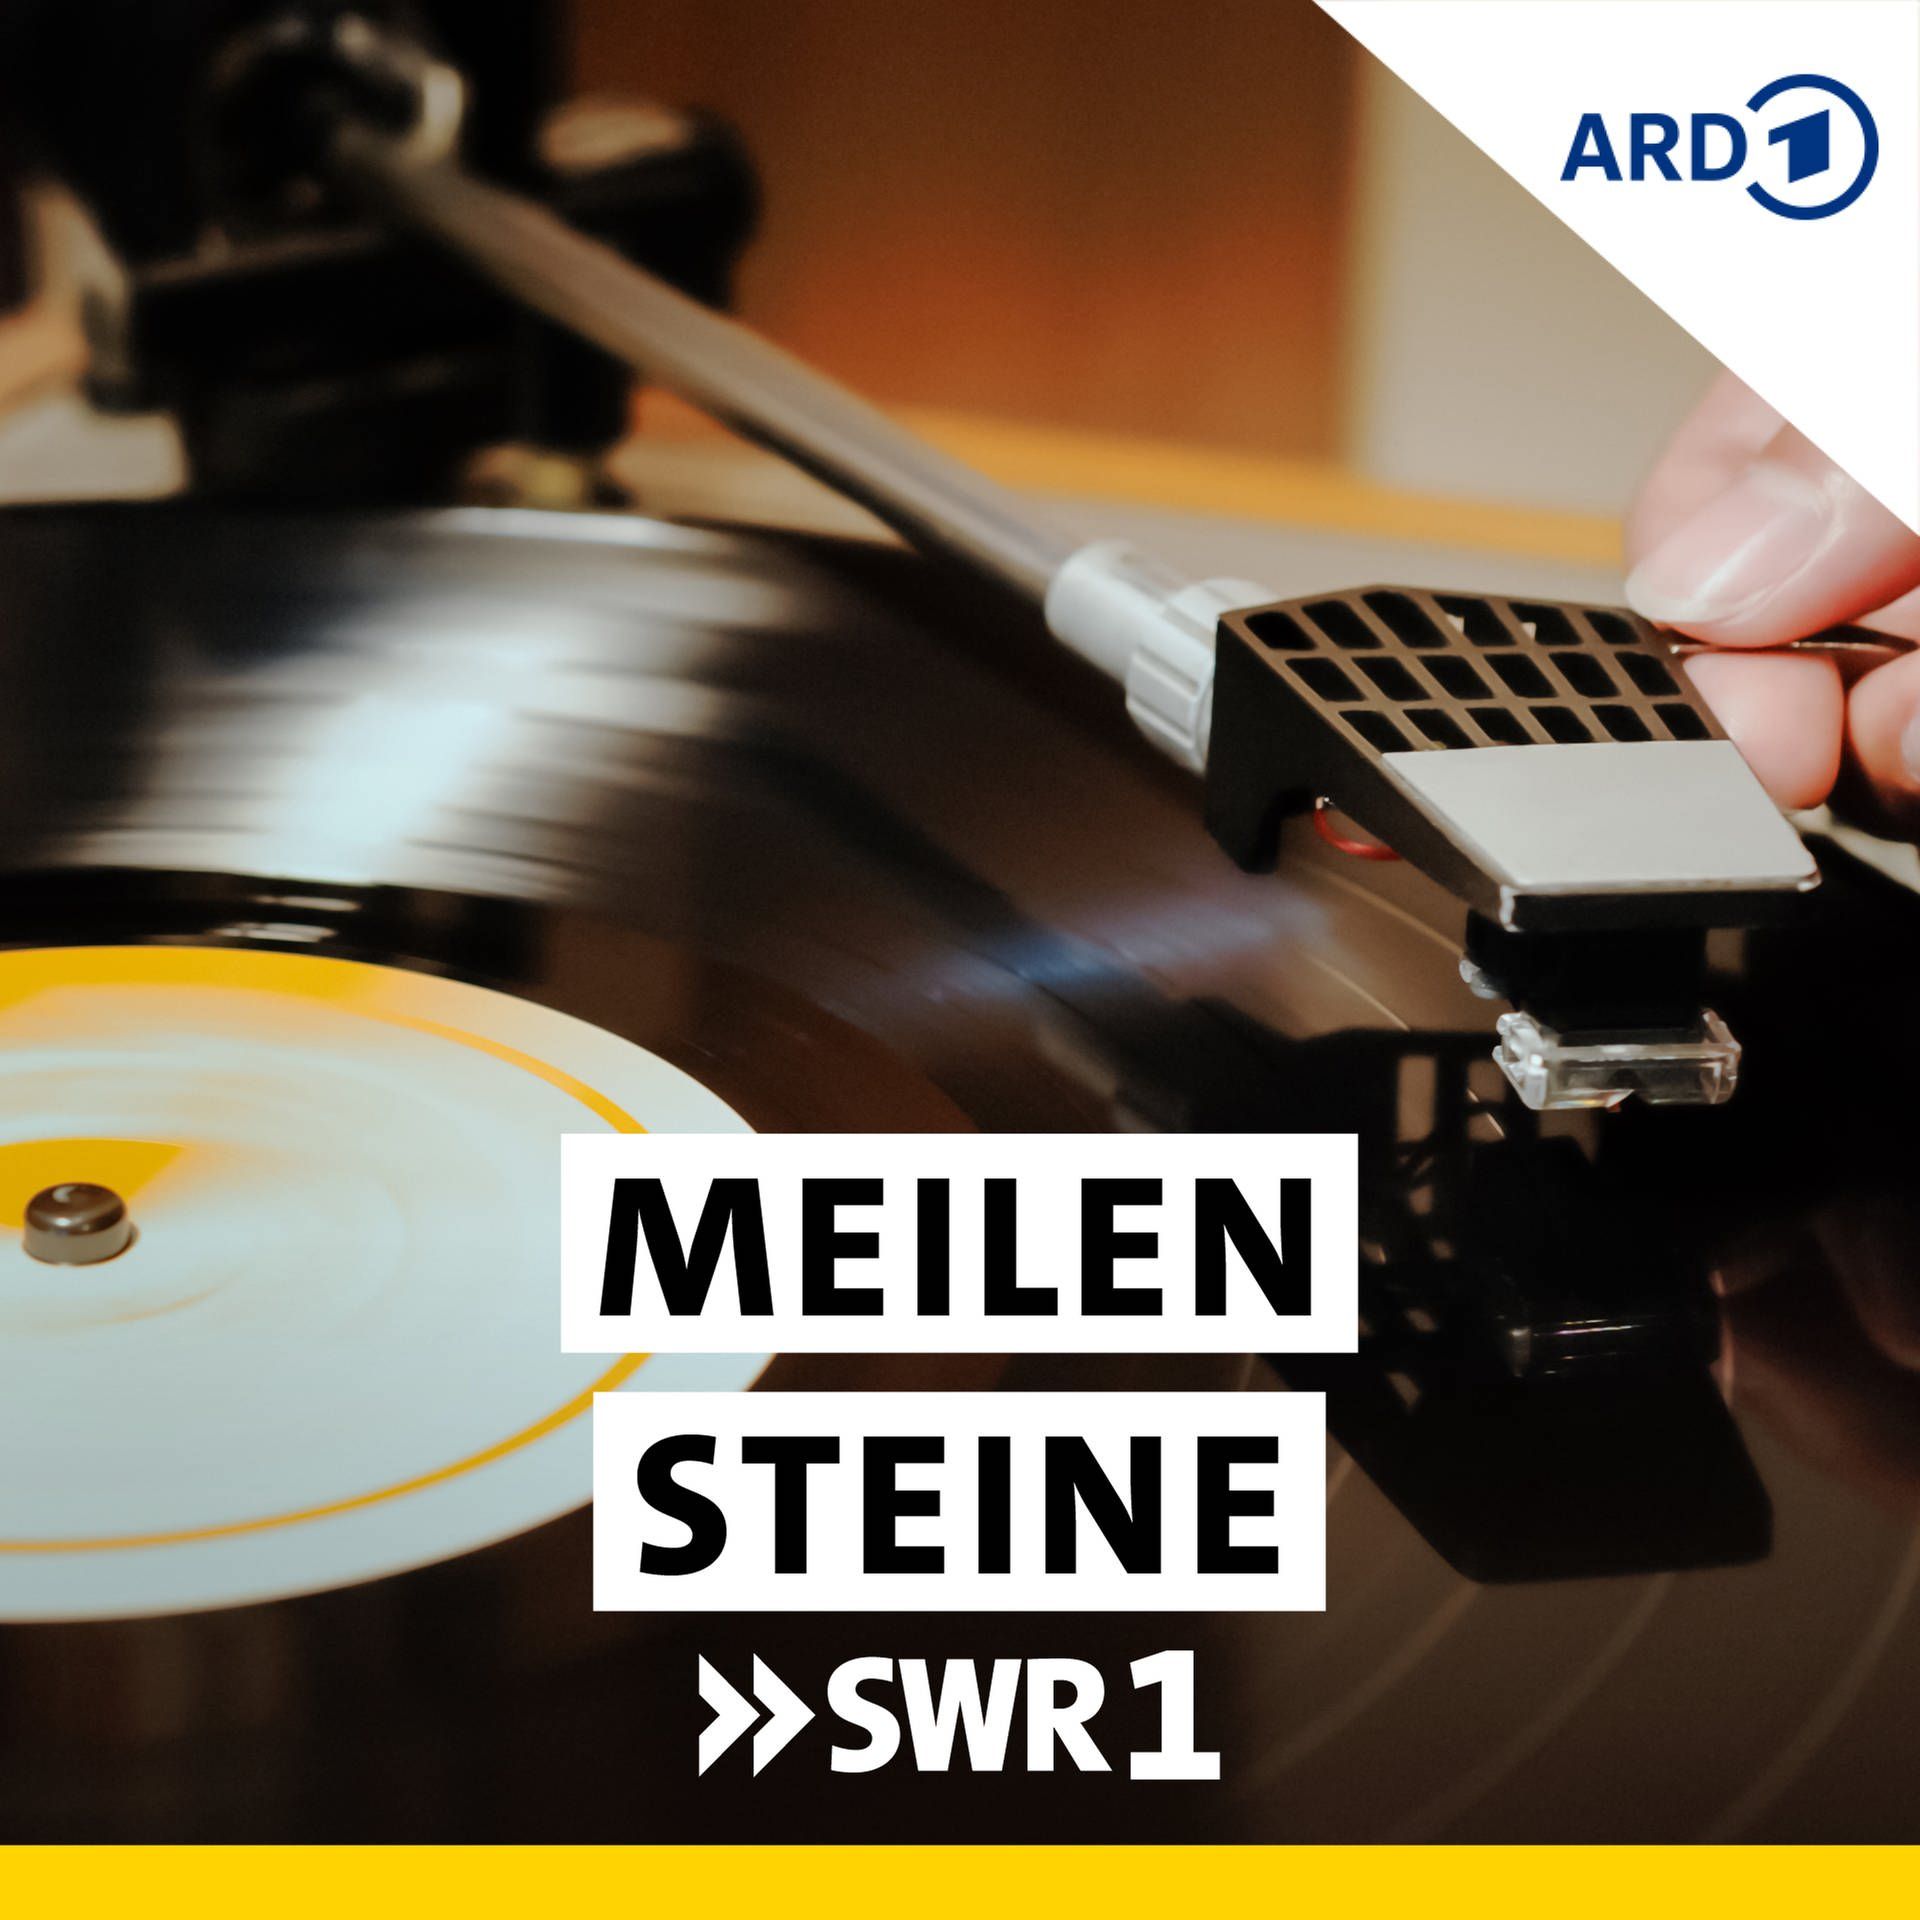 Meilensteine die machten Podcast RTL+ - Alben, Geschichte SWR1 - |